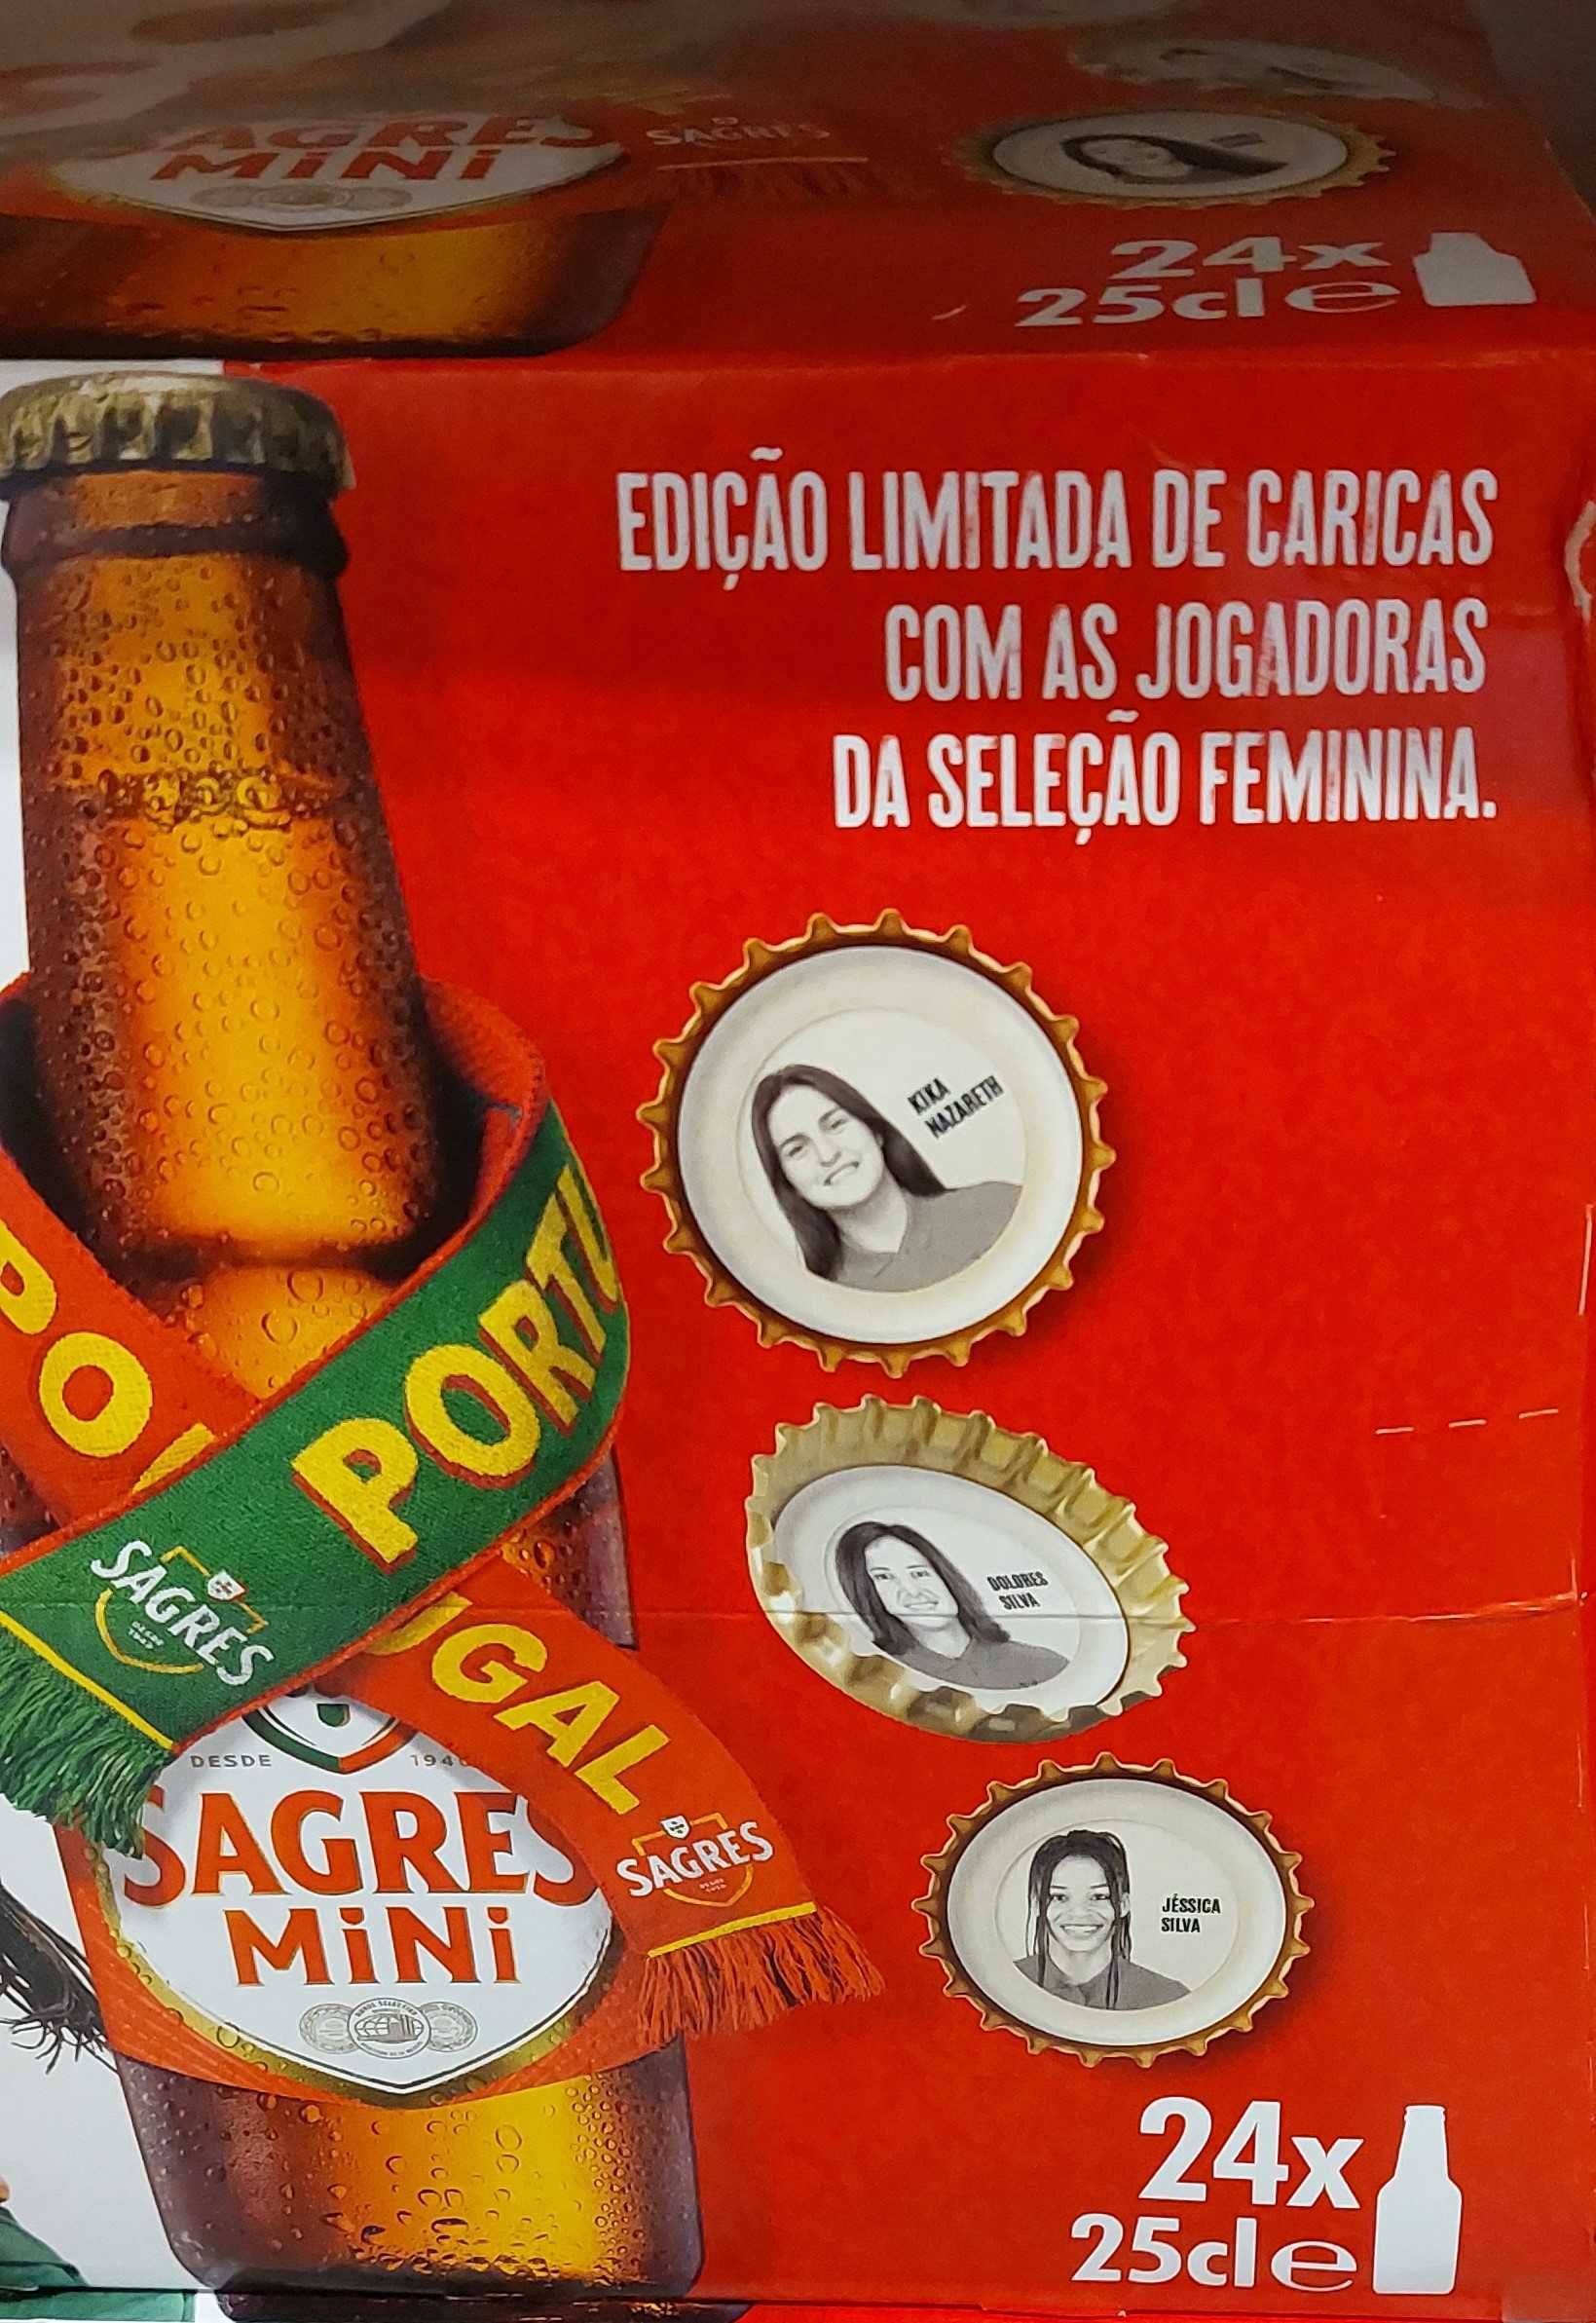 Edição Limitada de Caricas da Seleção Nacional de Portugal Feminina